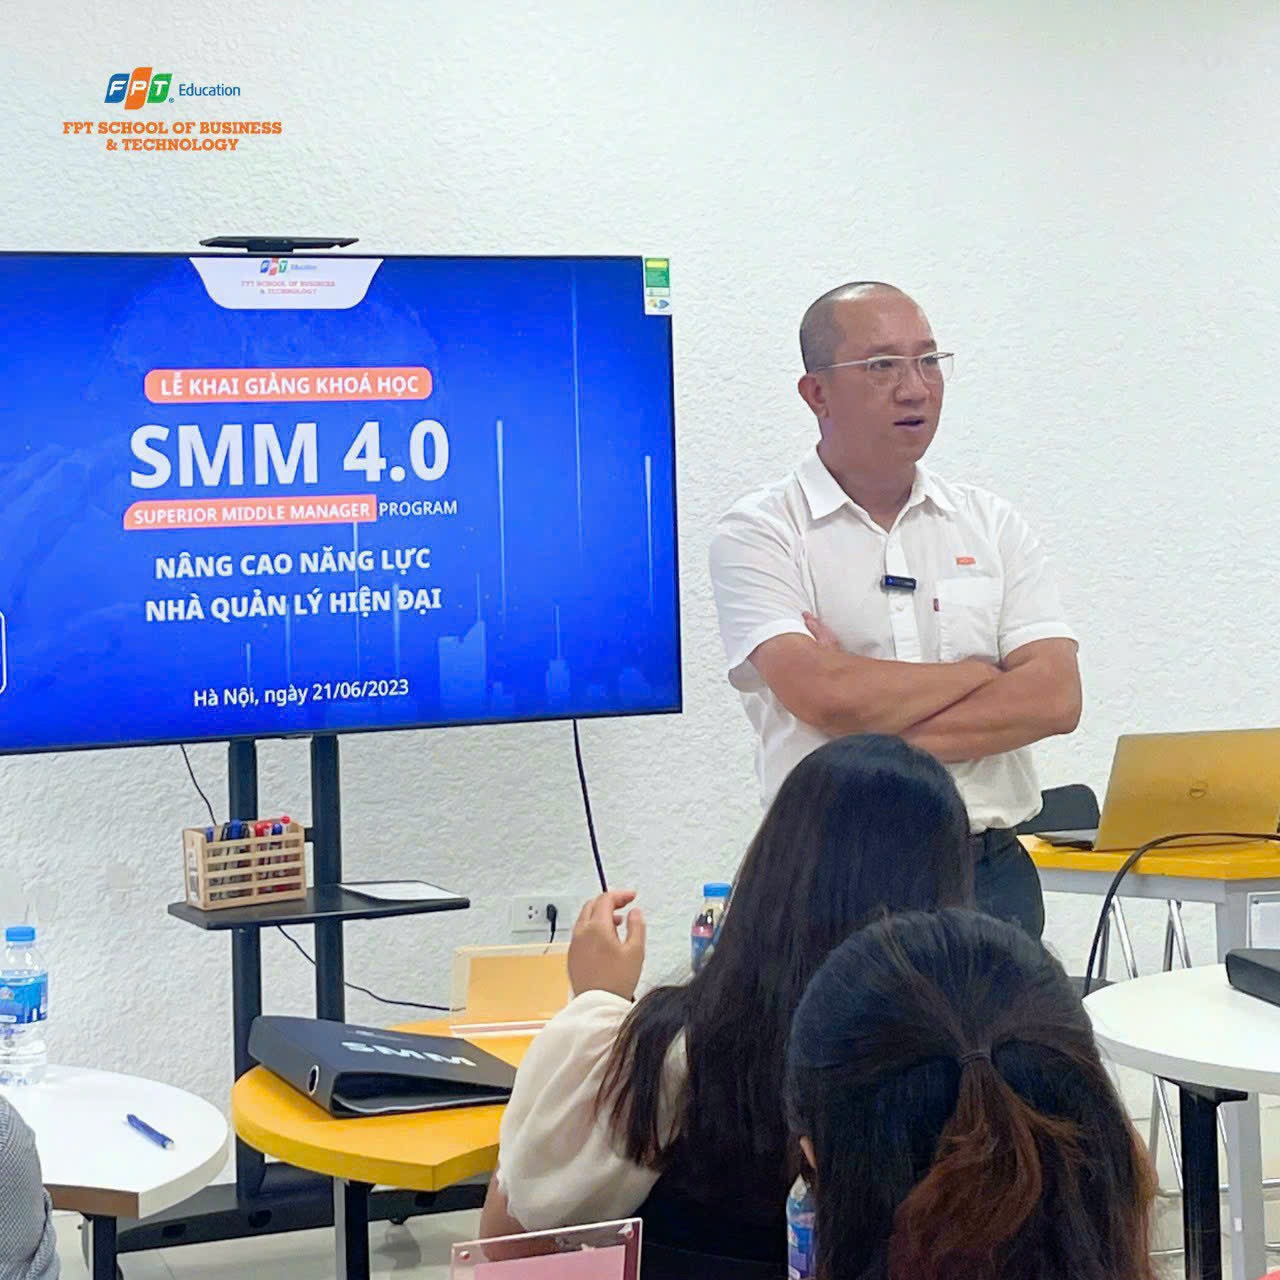 Lớp SMM 4.0 Nâng cao năng lực nhà quản lý hiện đại 04